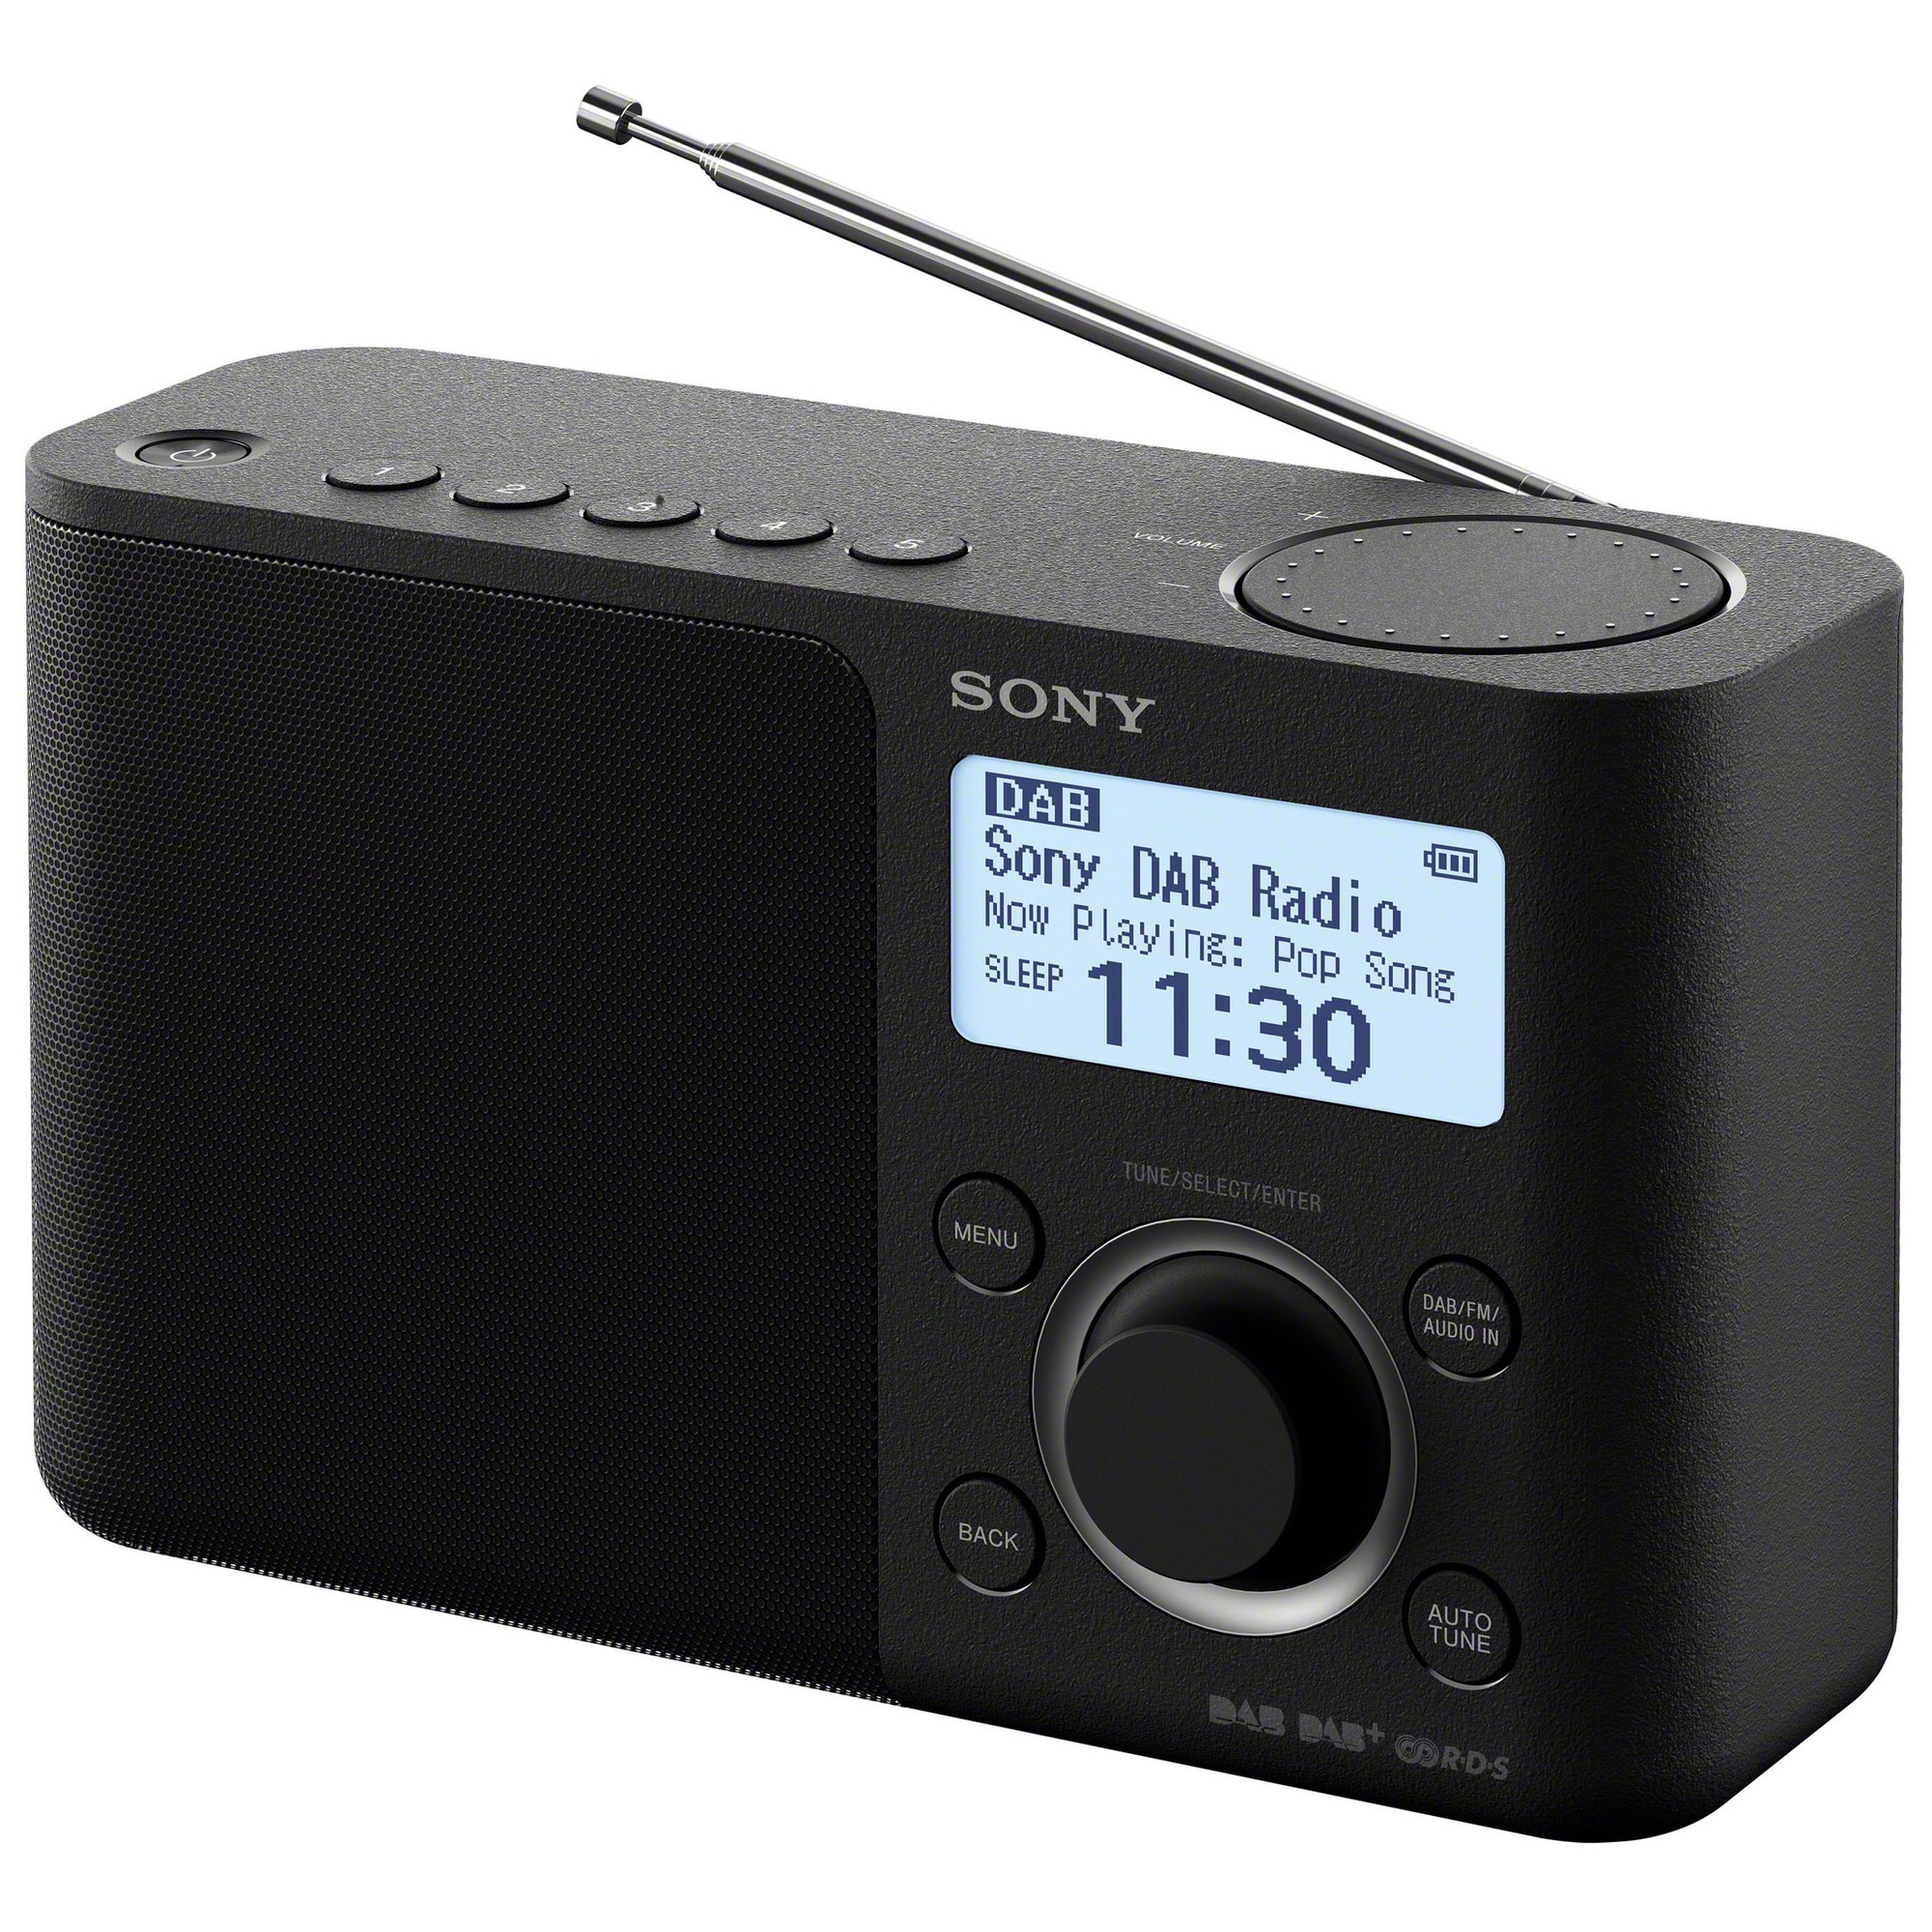 Sony DAB+ radio XDR-S61 (sort) - Elkjøp